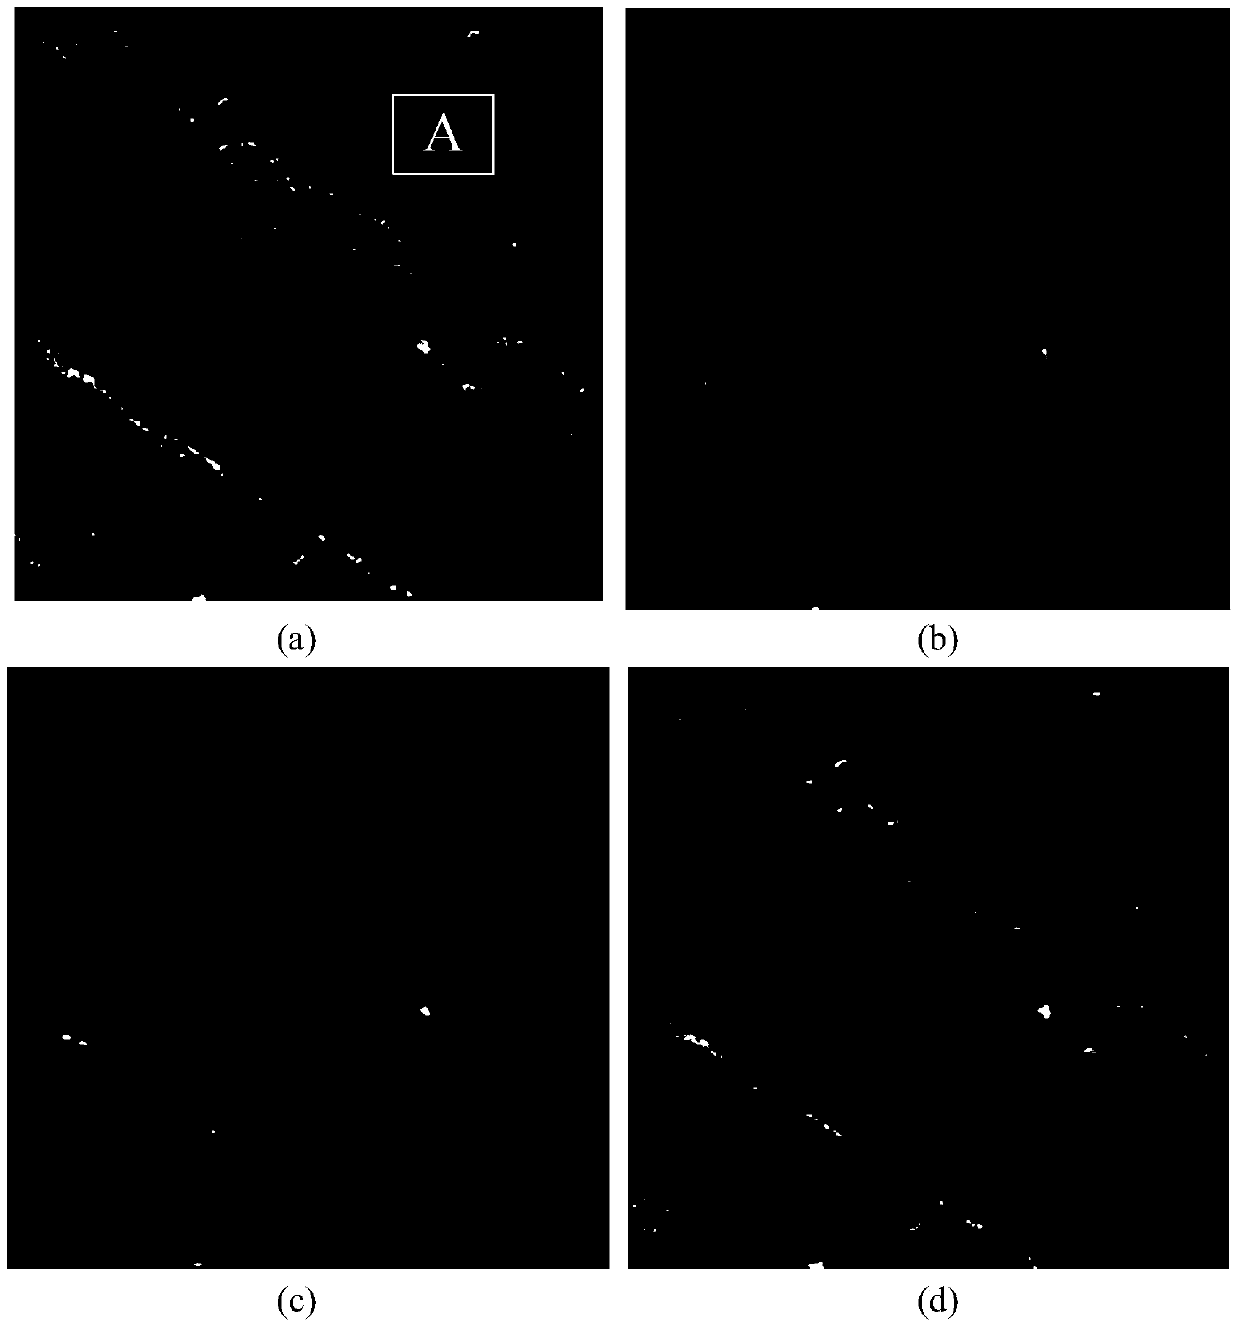 SAR image speckle reduction method based on directional wave domain HMT model